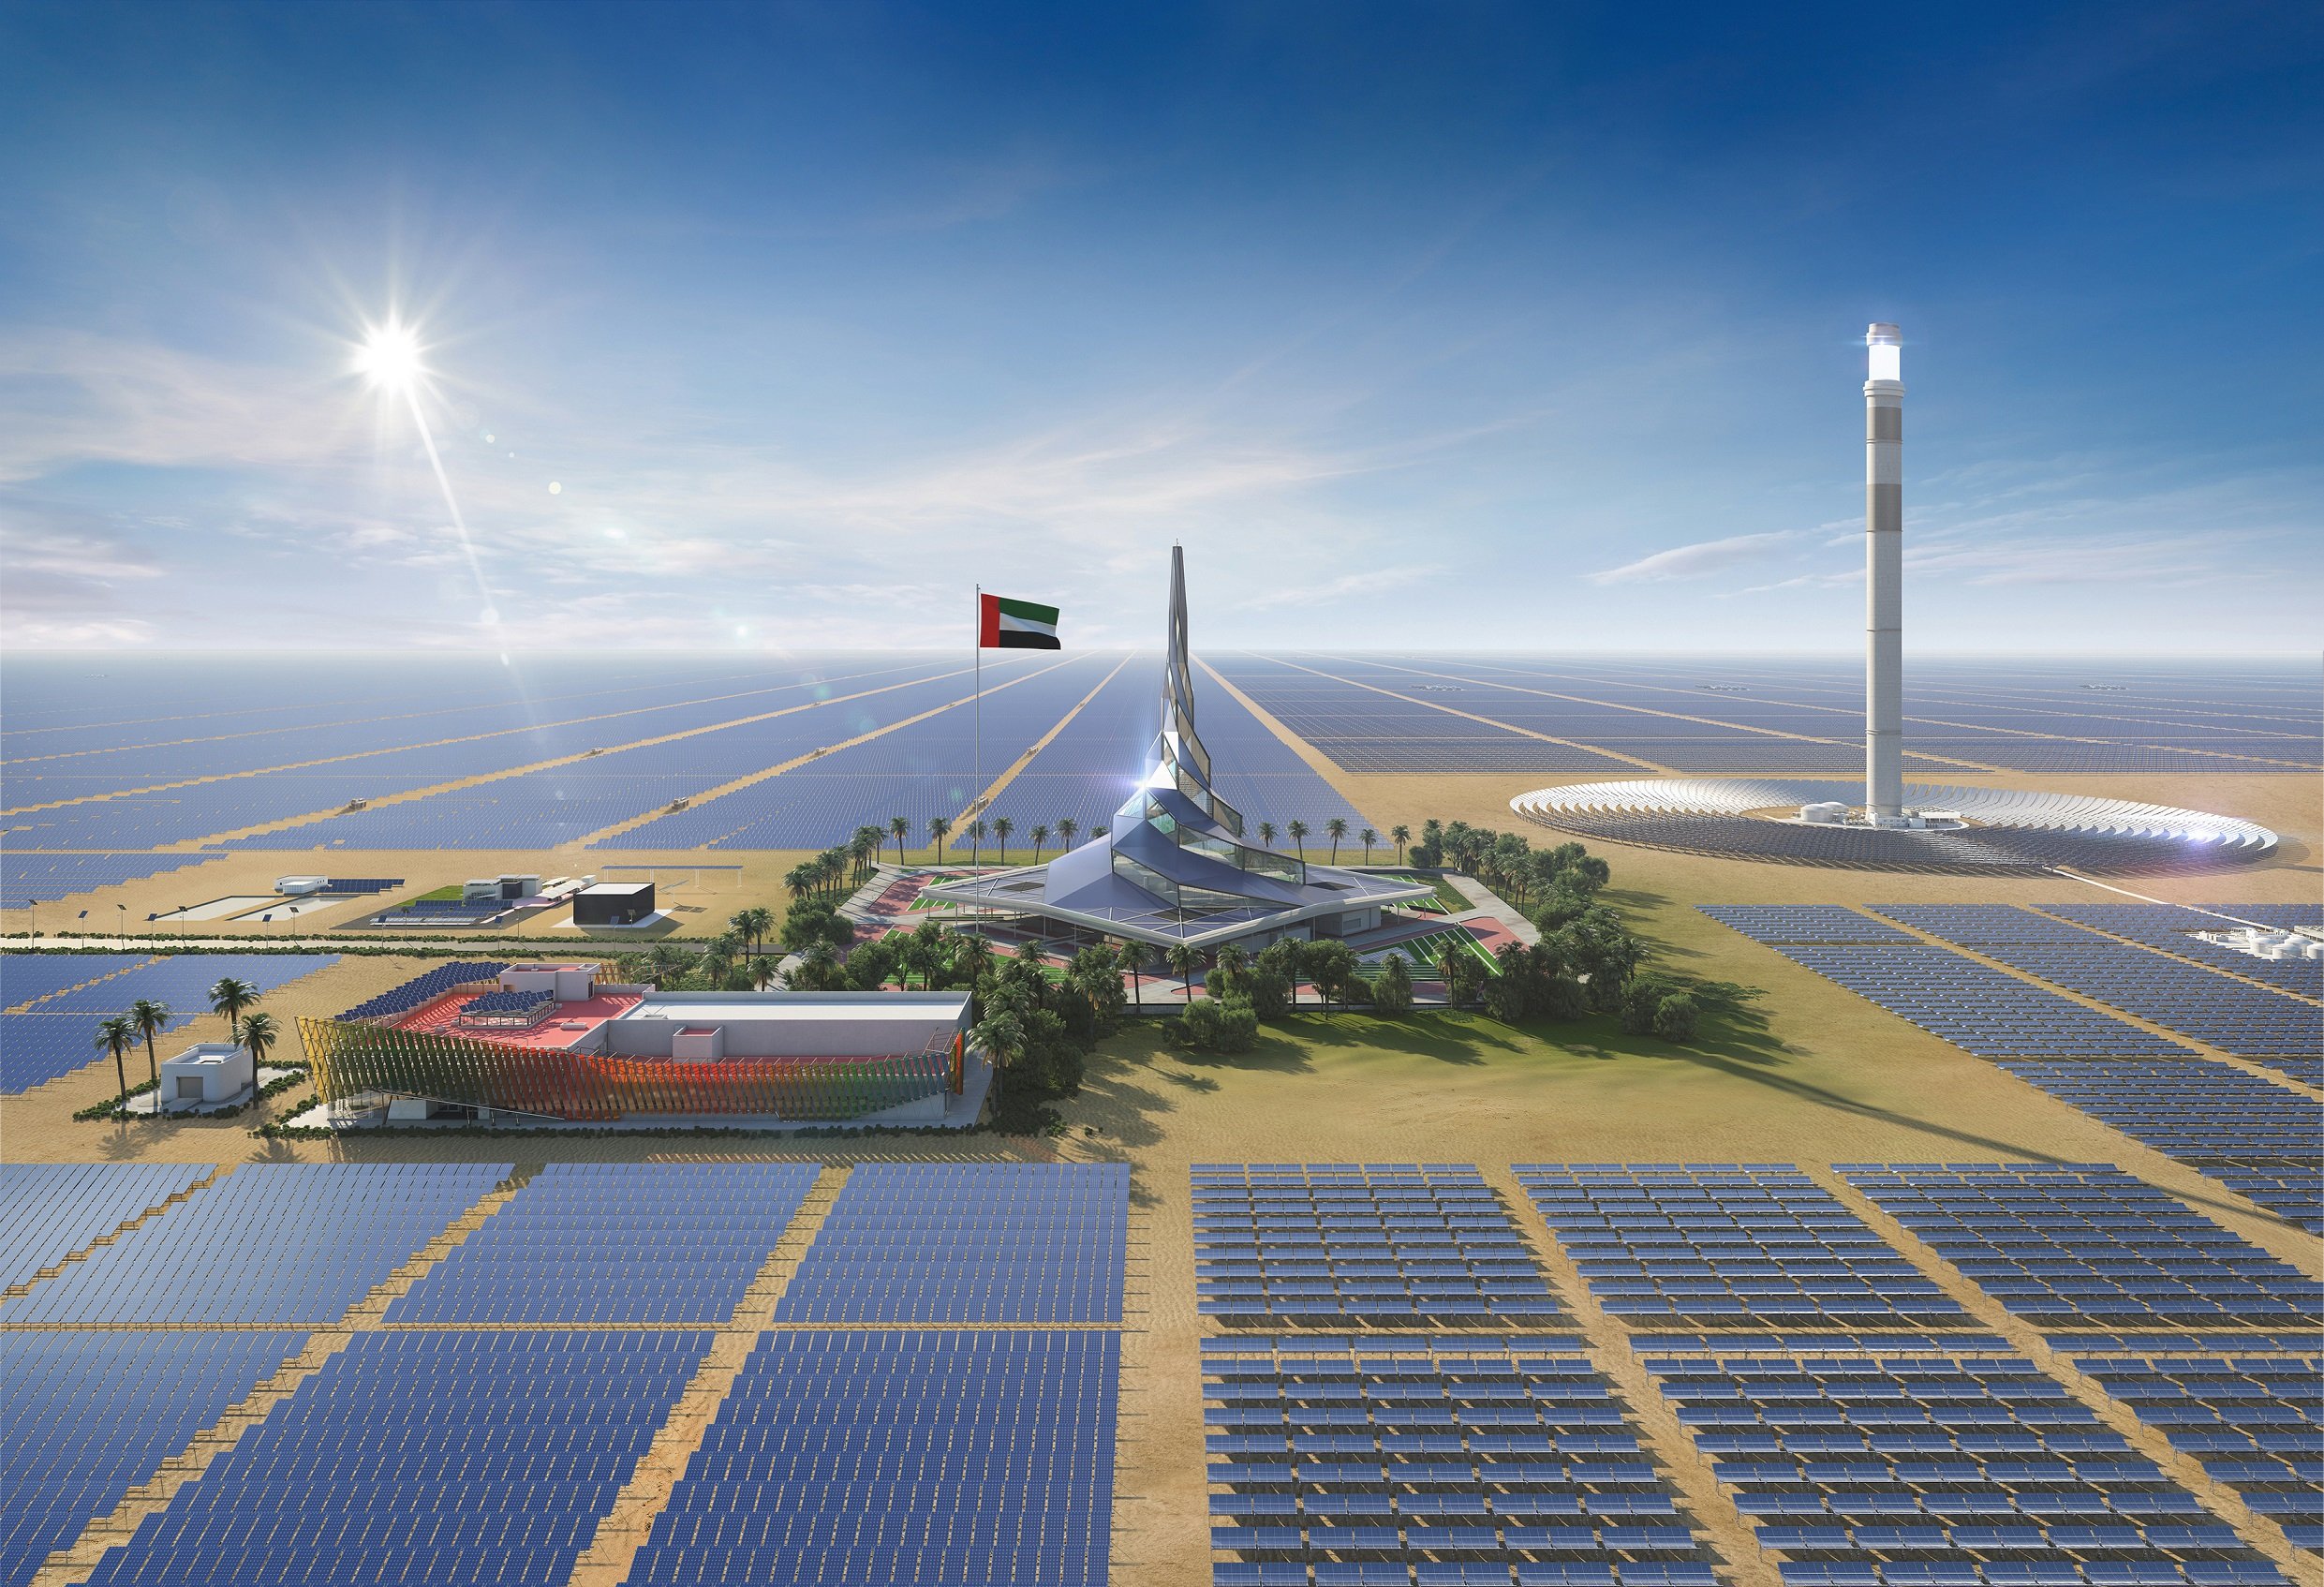 الطاقة الشمسية هي "ملك الكهرباء" الجديد - اقتصاد - عربي ...